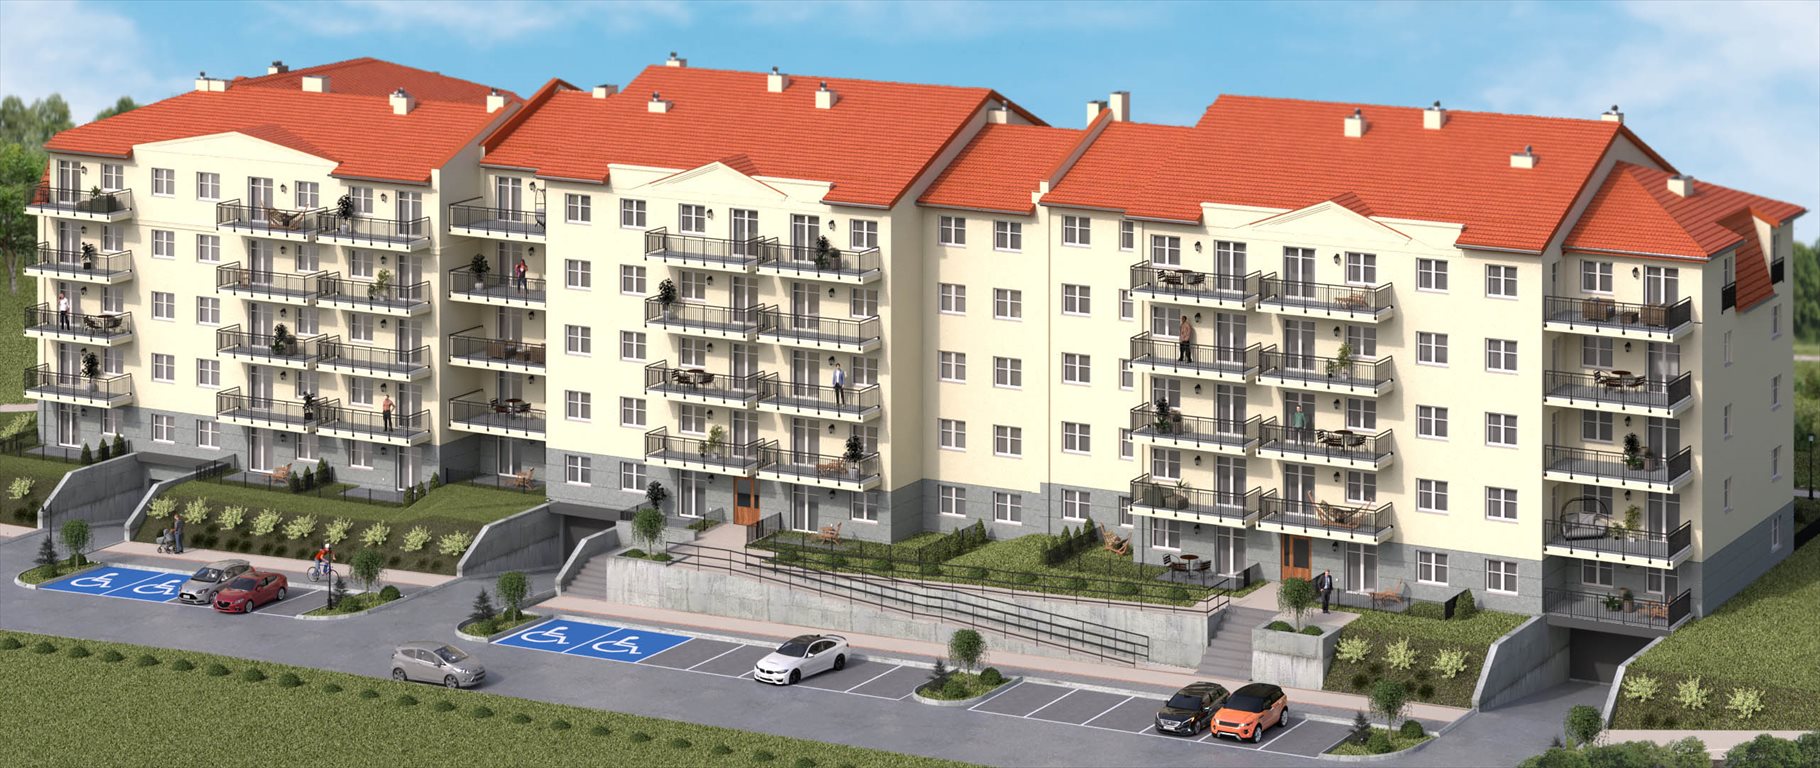 Mieszkanie trzypokojowe na sprzedaż Sosnowiec, Sielec, Klimontowska 47  54m2 Foto 2